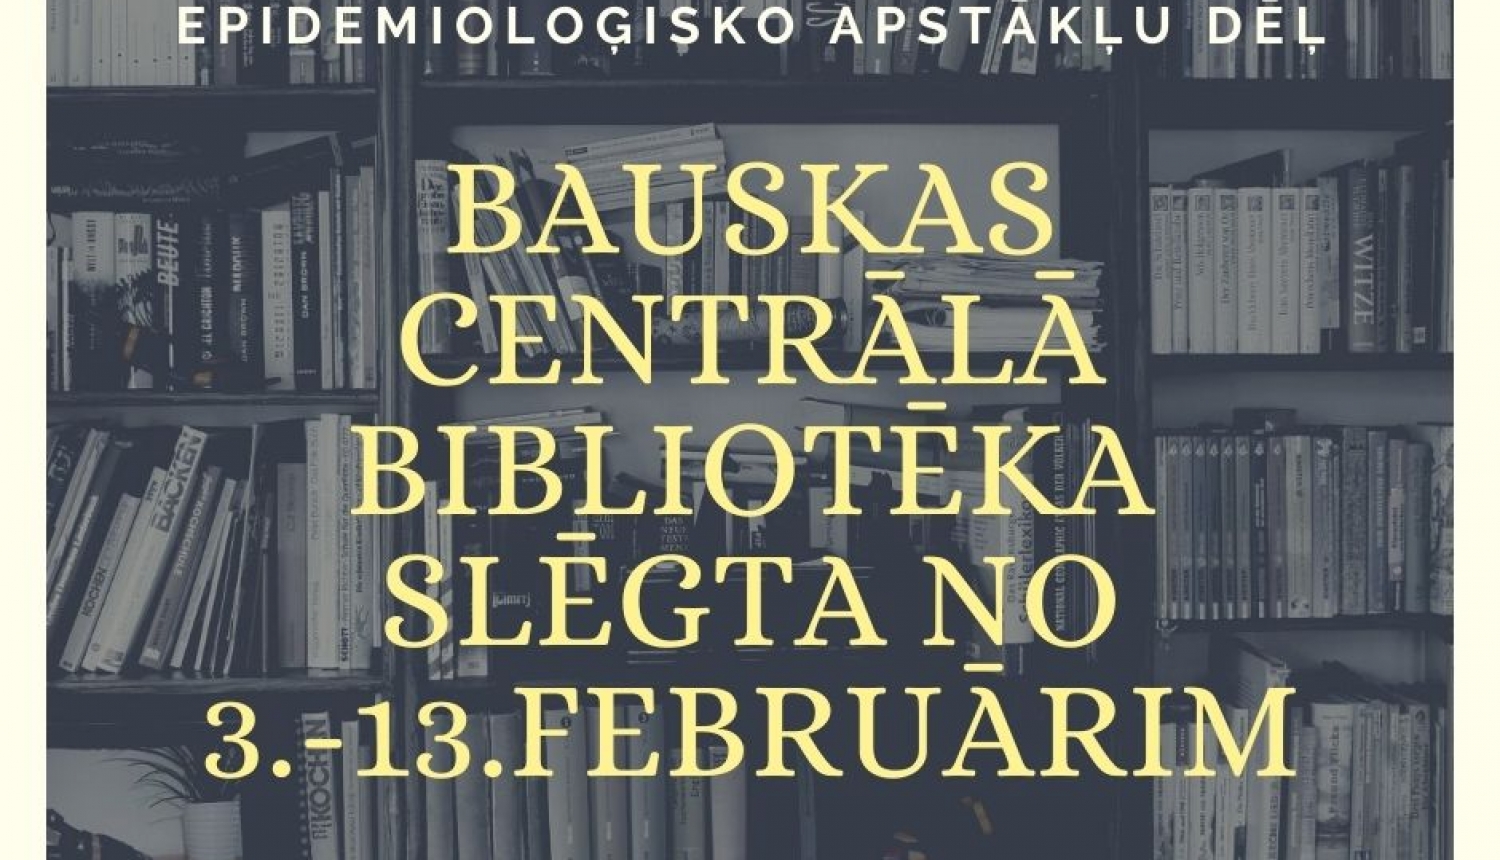 Bauskas Centrālā bibliotēka slēgta no 3.līdz 13.februārim